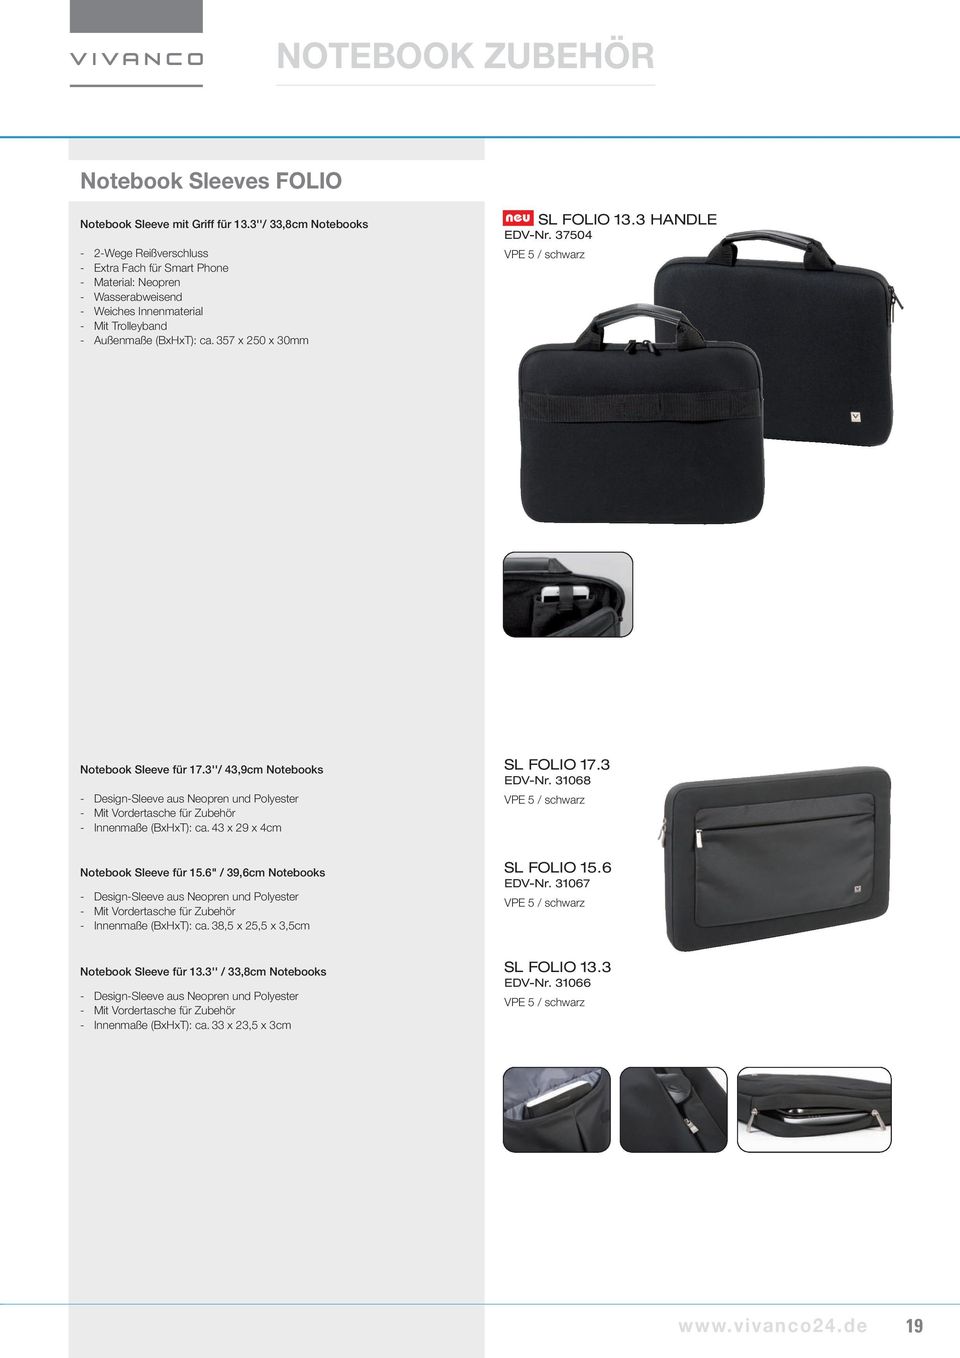 357 x 250 x 30mm SL FOLIO 13.3 HANDLE EDV-Nr. 37504 Notebook Sleeve für 17.3''/ 43,9cm Notebooks - Design-Sleeve aus Neopren und Polyester - Mit Vordertasche für Zubehör - Innenmaße (BxHxT): ca.